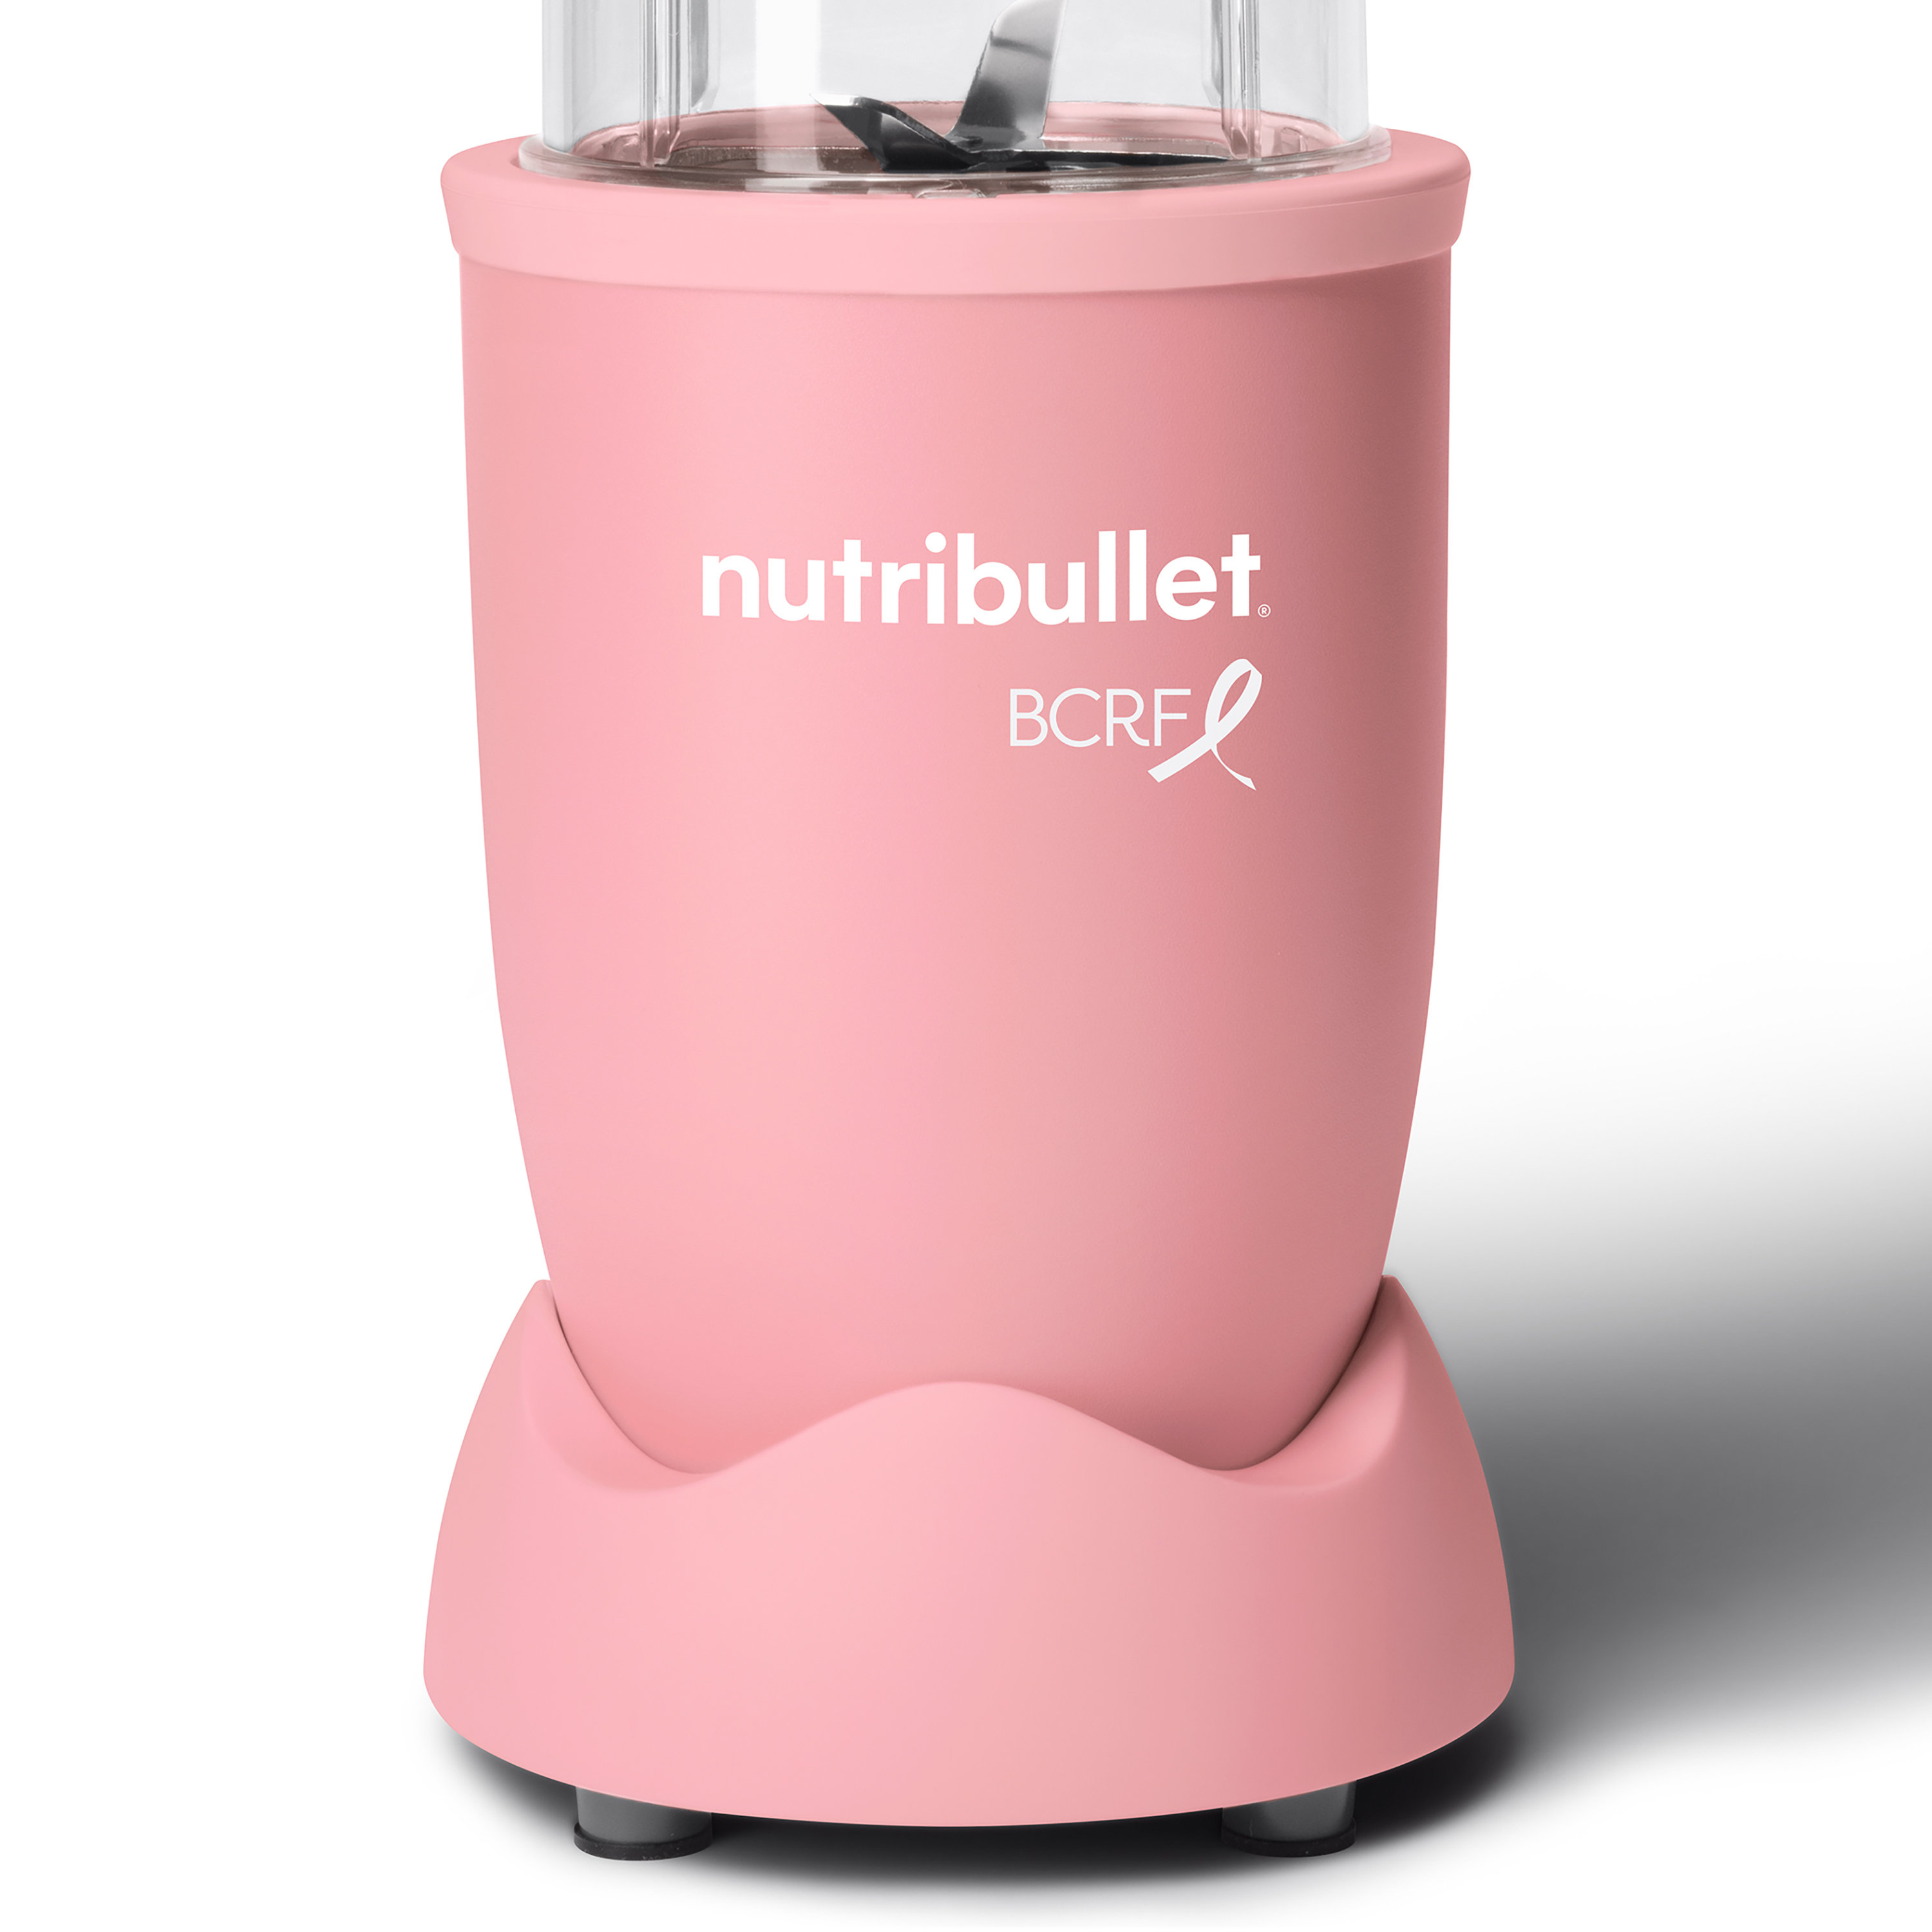 nutribullet Pro 900 Watt Personal Blender - 13-Piece High-Speed